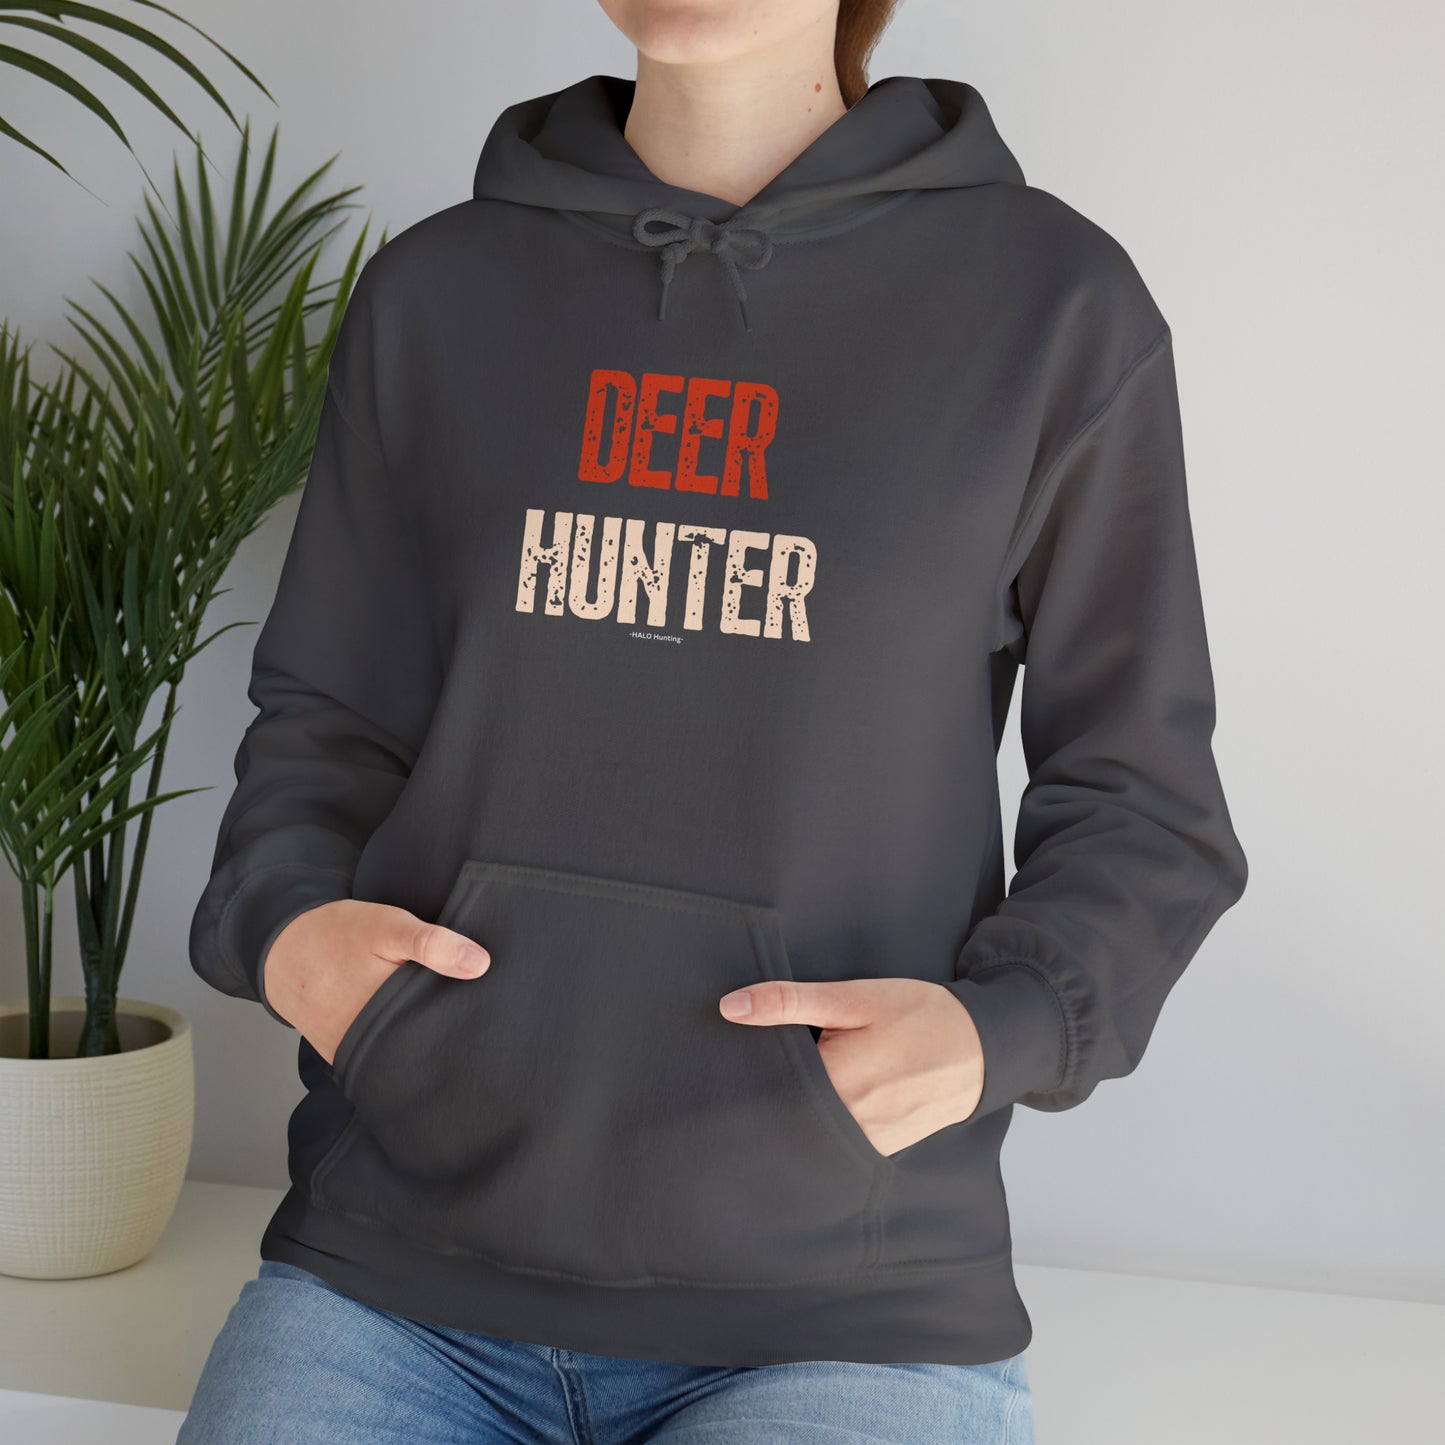 Deer Hunter Hooded Sweatshirt